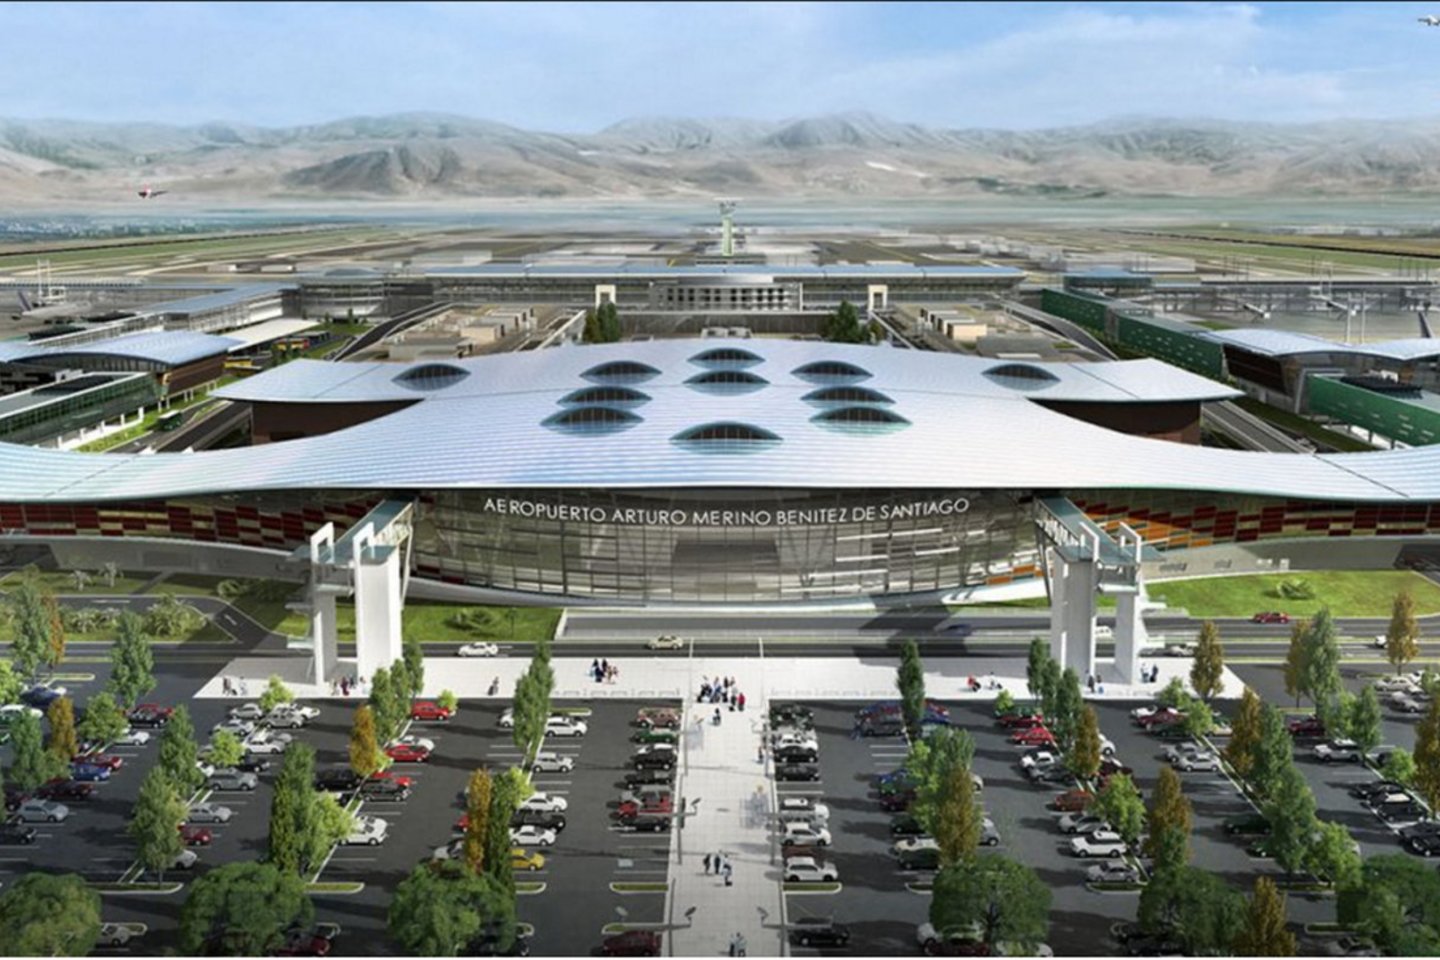 Arturo Merino Benitez tarptautinis oro uostas Čilėje yra svarbus susisiekimo mazgas tarp Amerikos, Okeanijos ir Europos bei vienas efektyviausių ir moderniausių Lotynų Amerikoje.<br>ADPi and Luis Vidal + architects / archdaily.com vizual.